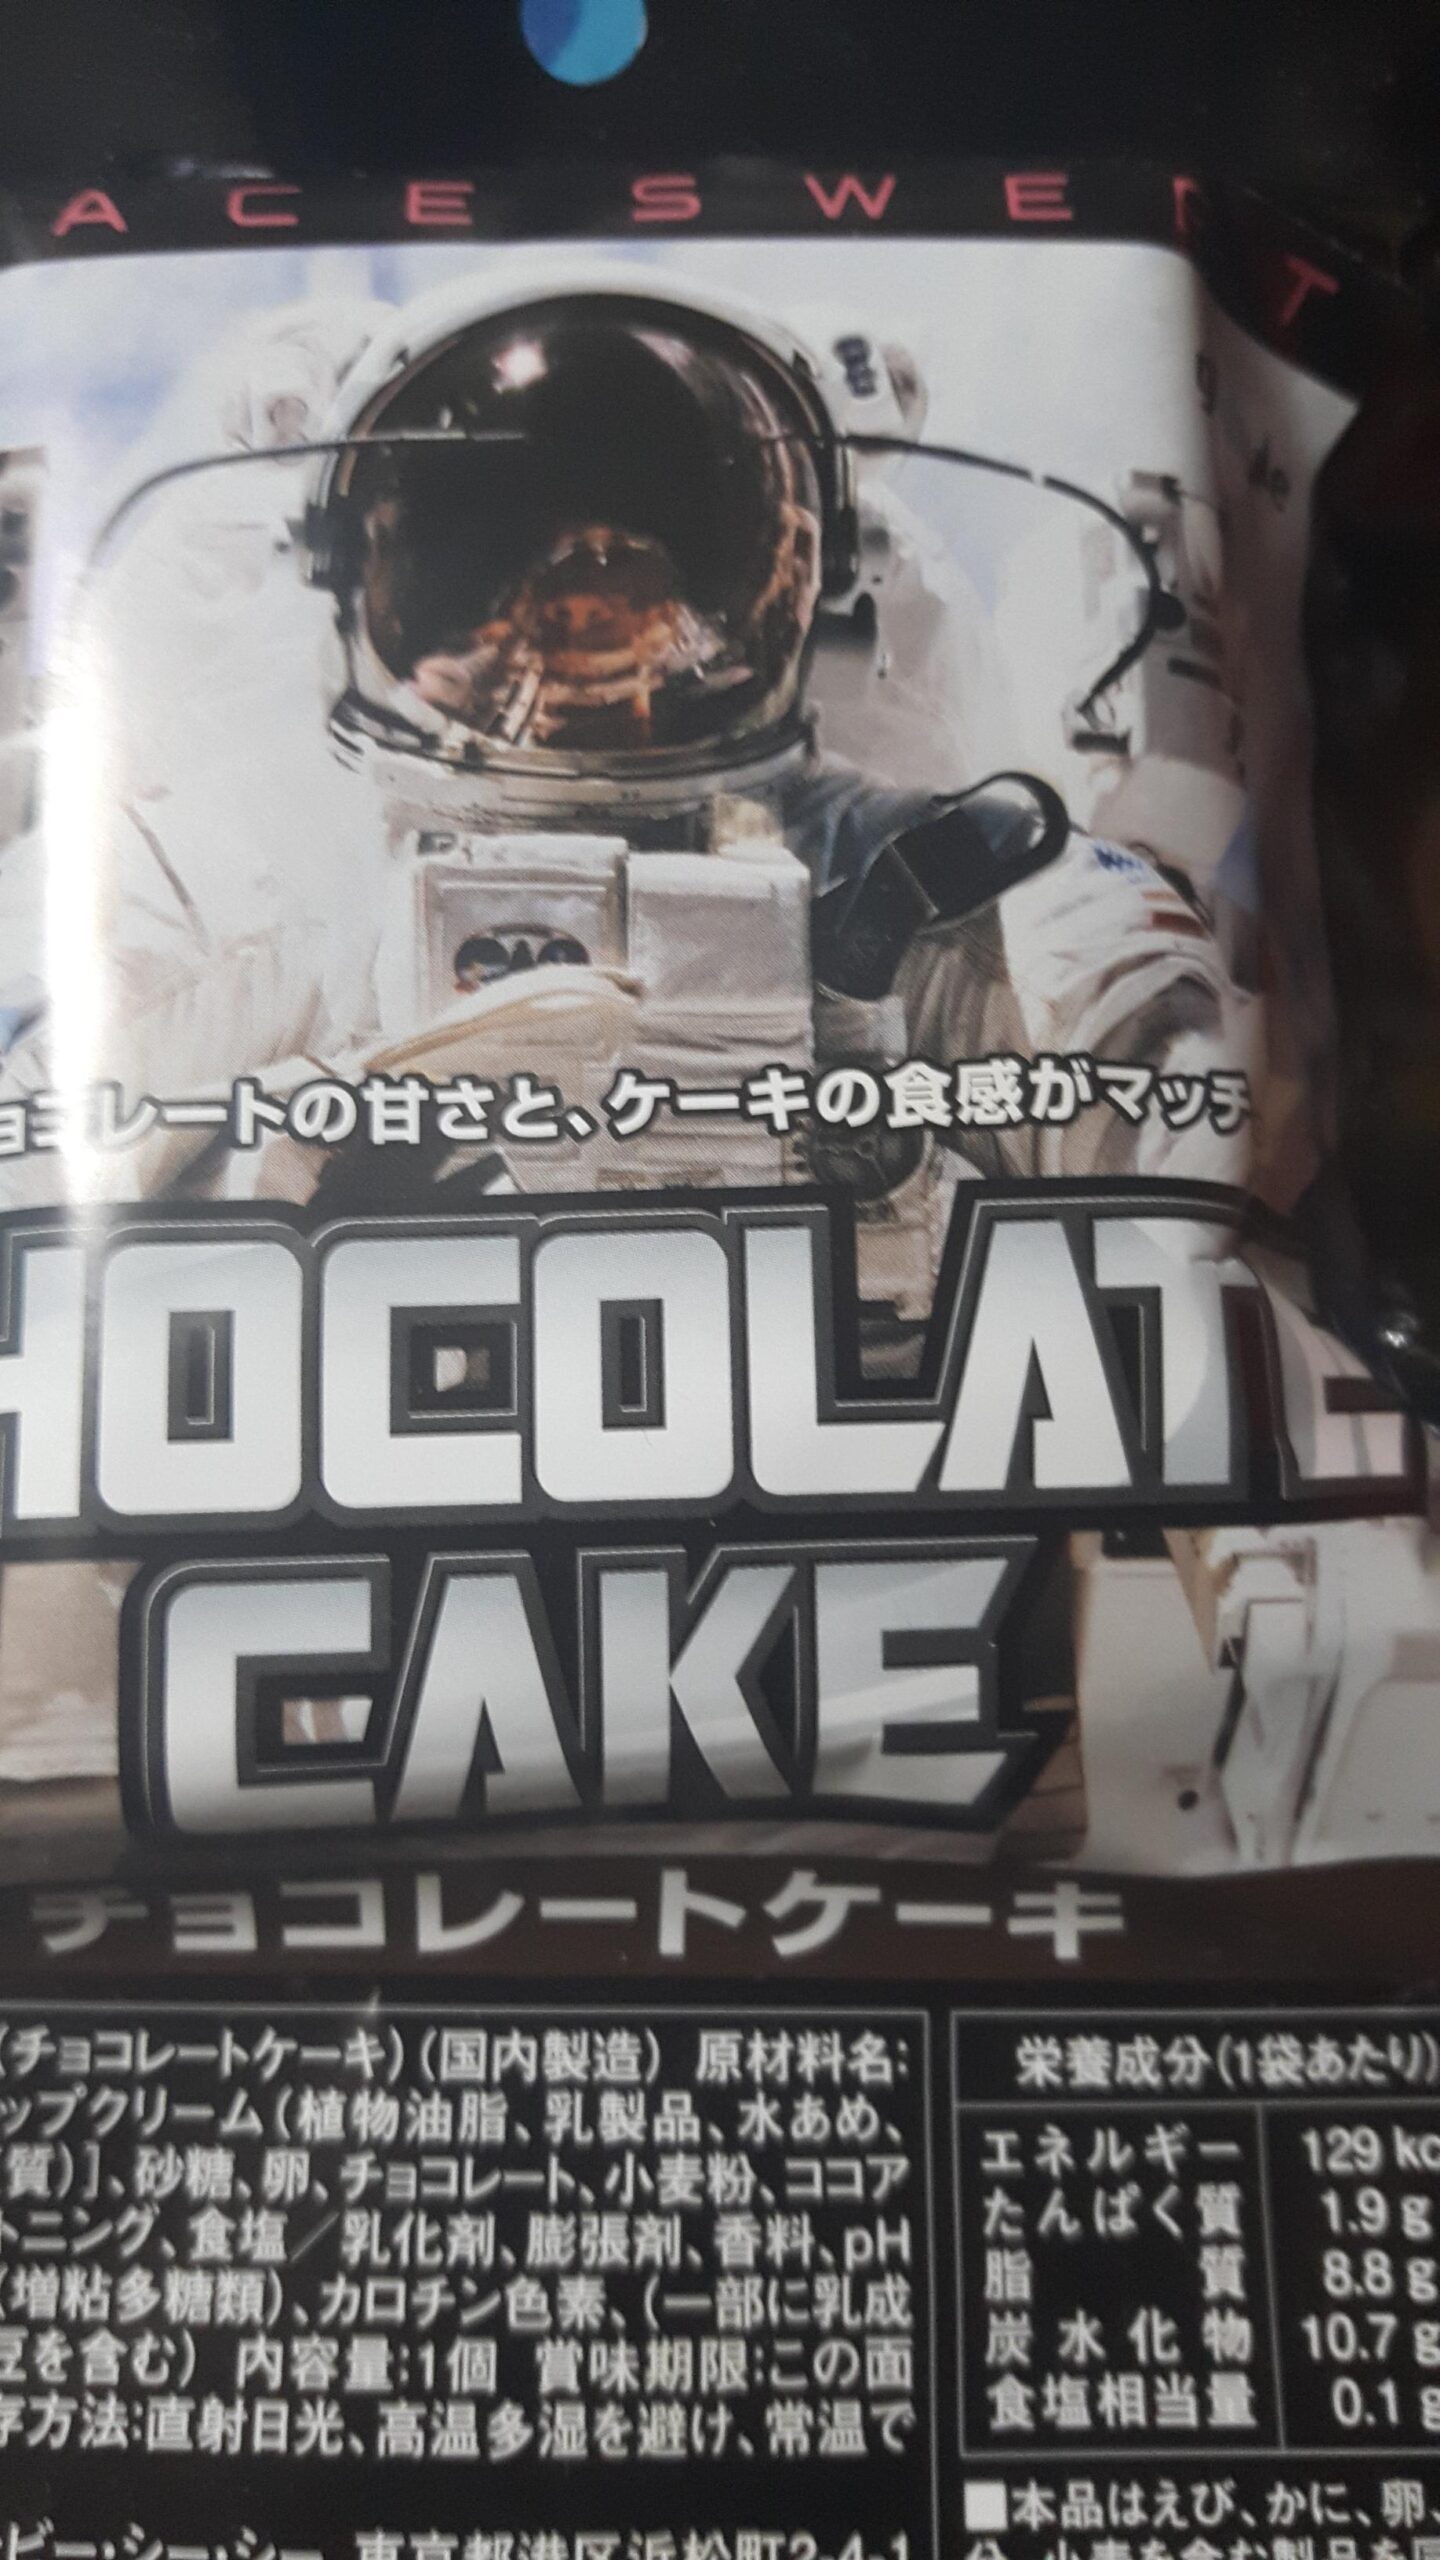 チョコレートケーキの宇宙食食うで